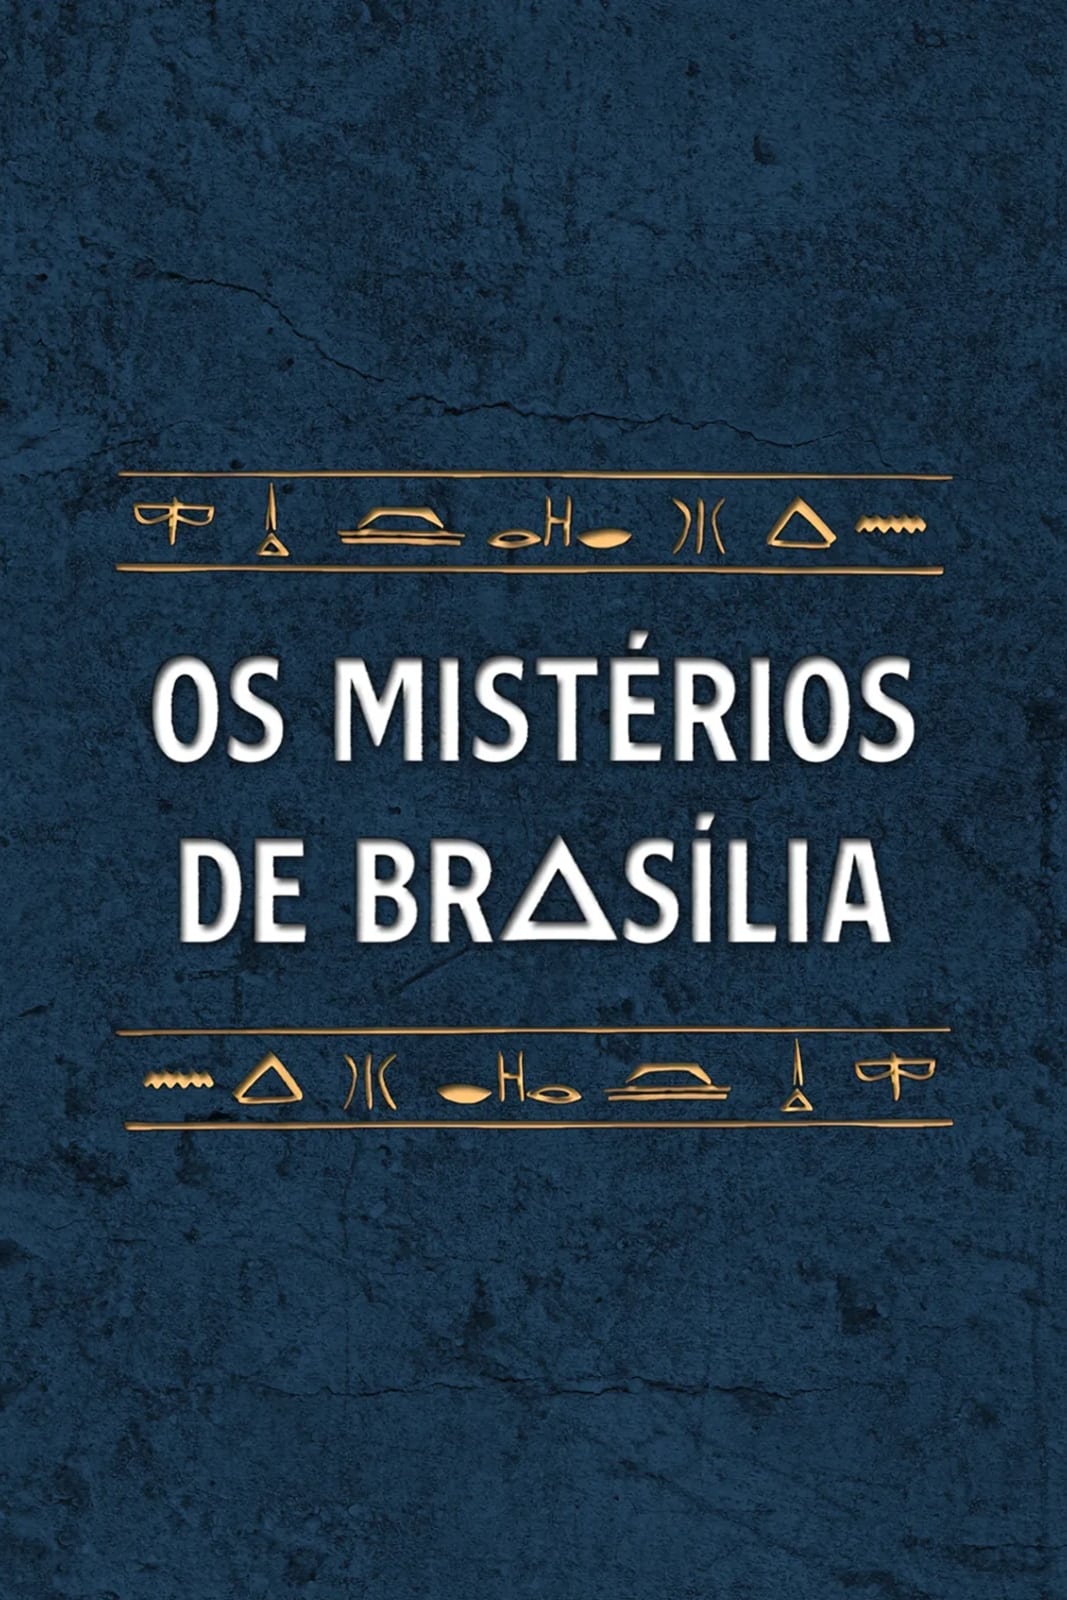 Os Mistérios de Brasília